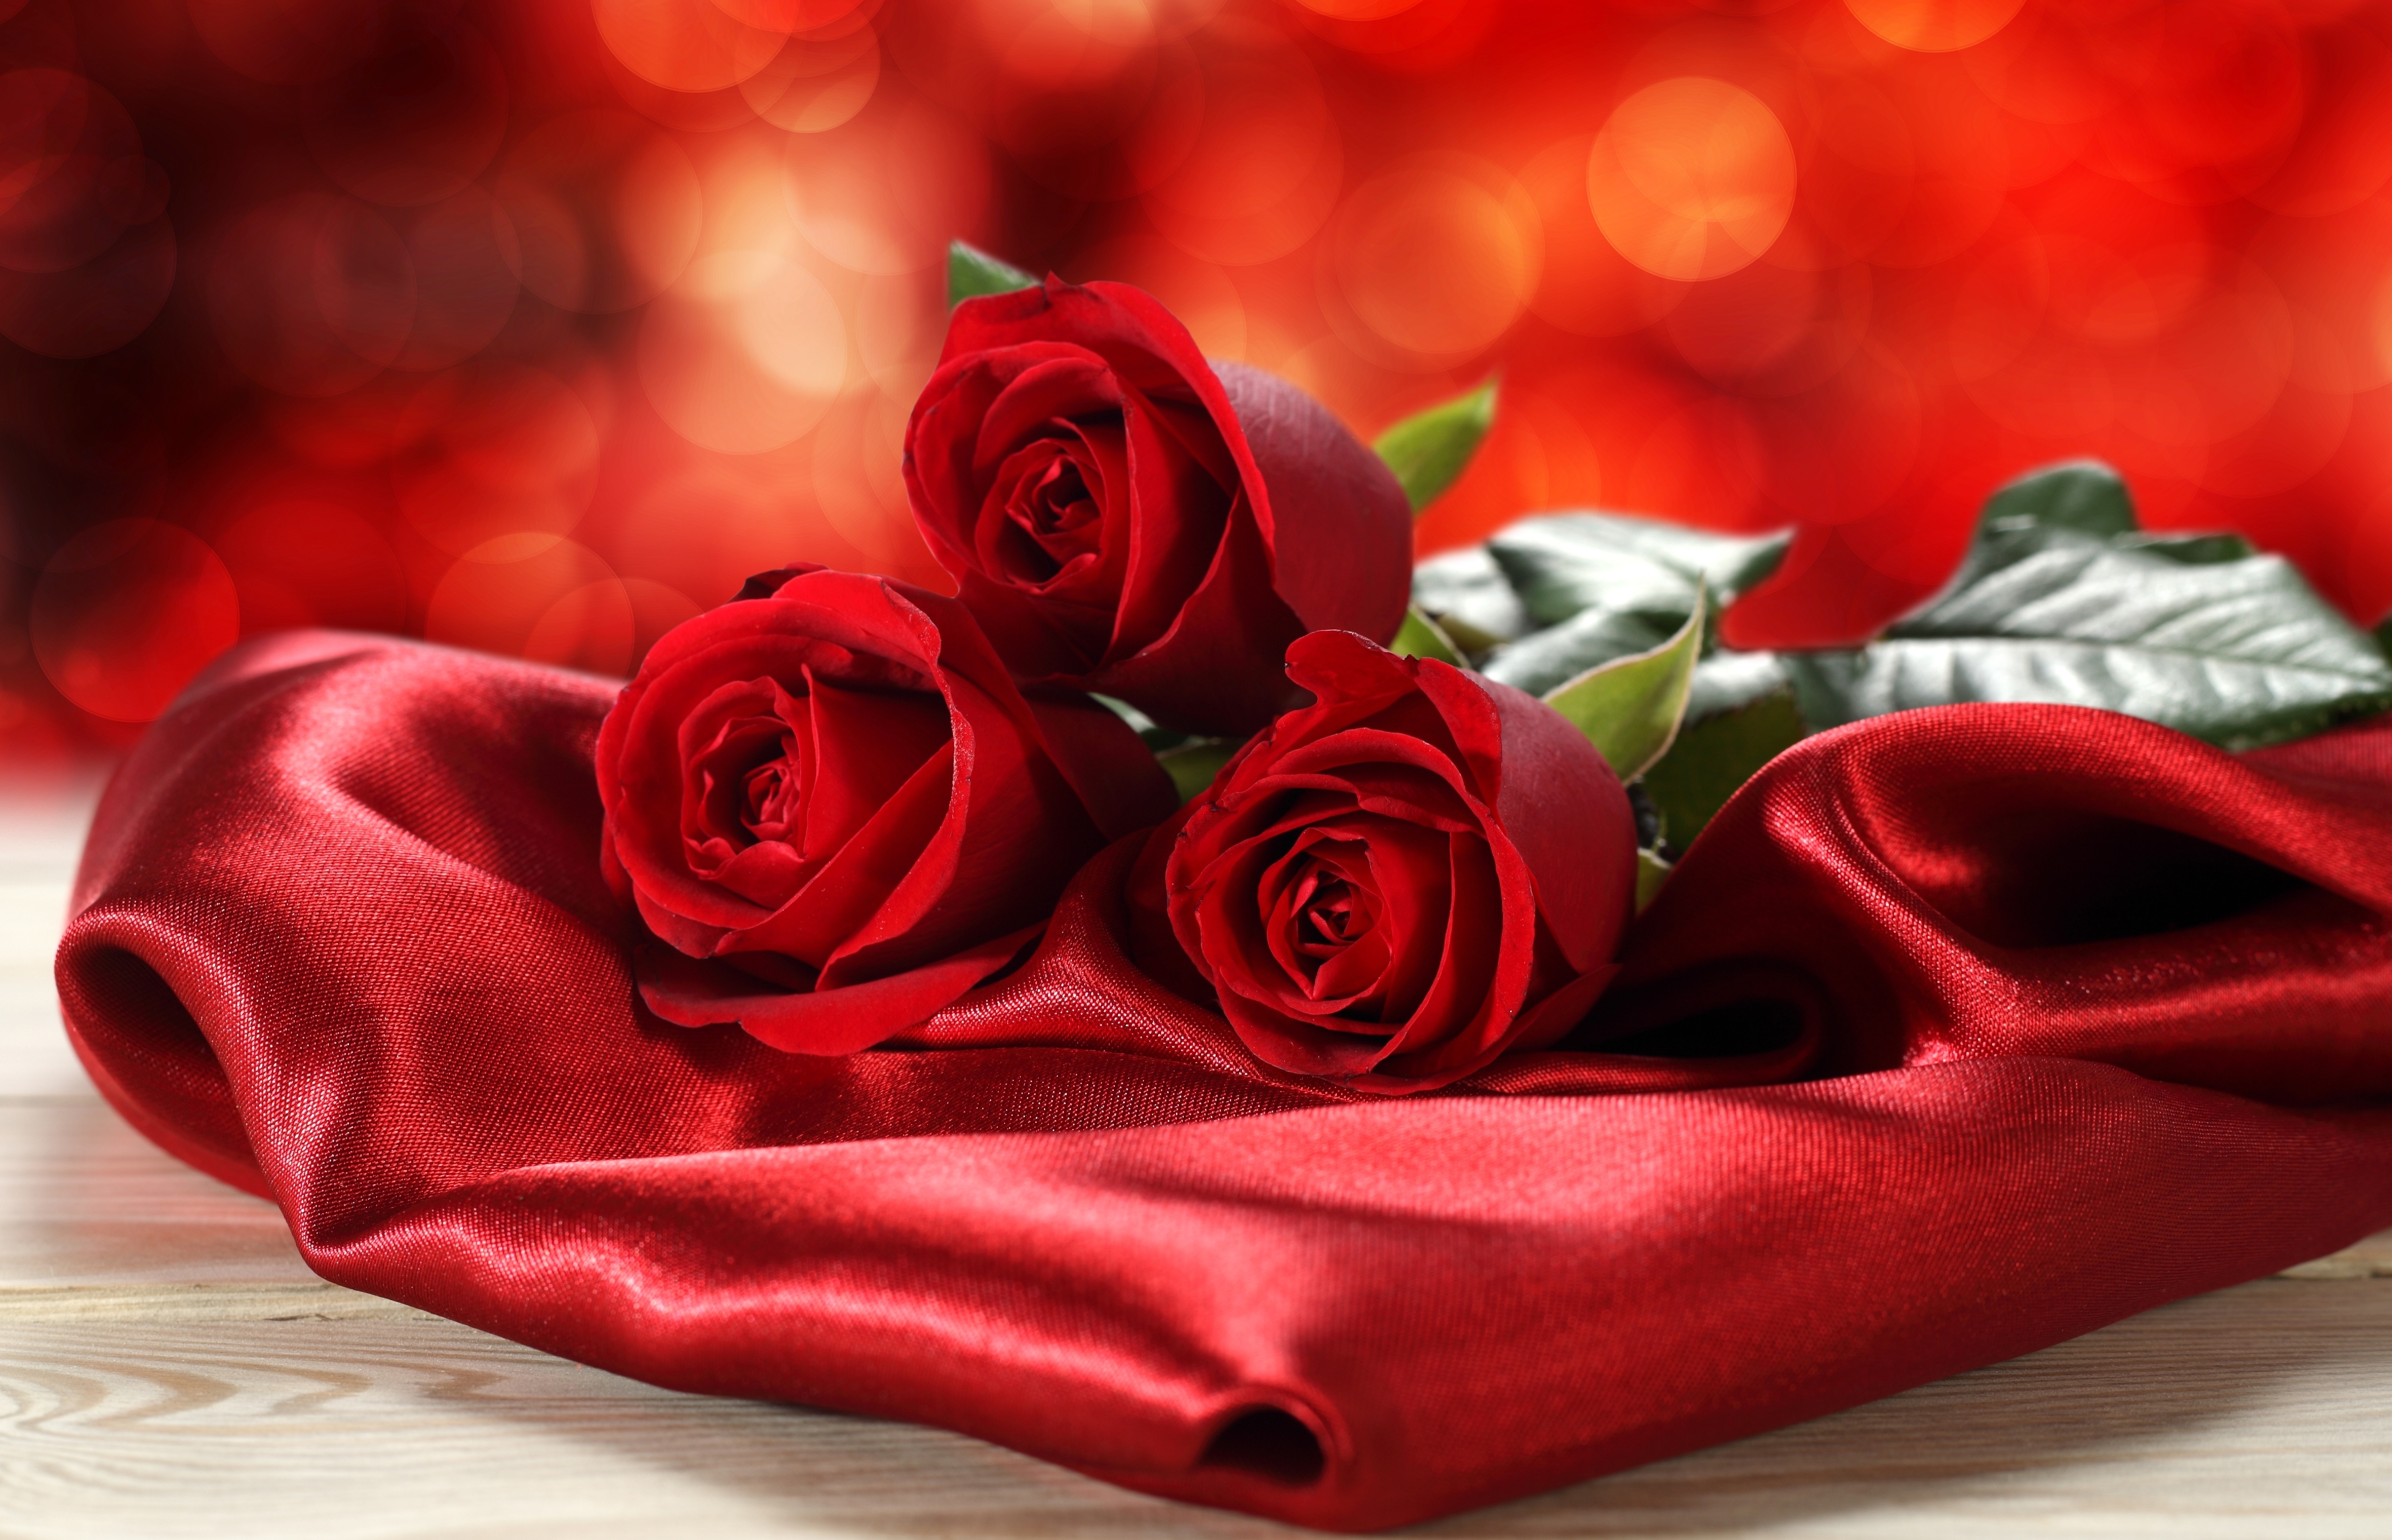 Bilde Rød Roser blomst 4660x3000 rosa Blomster